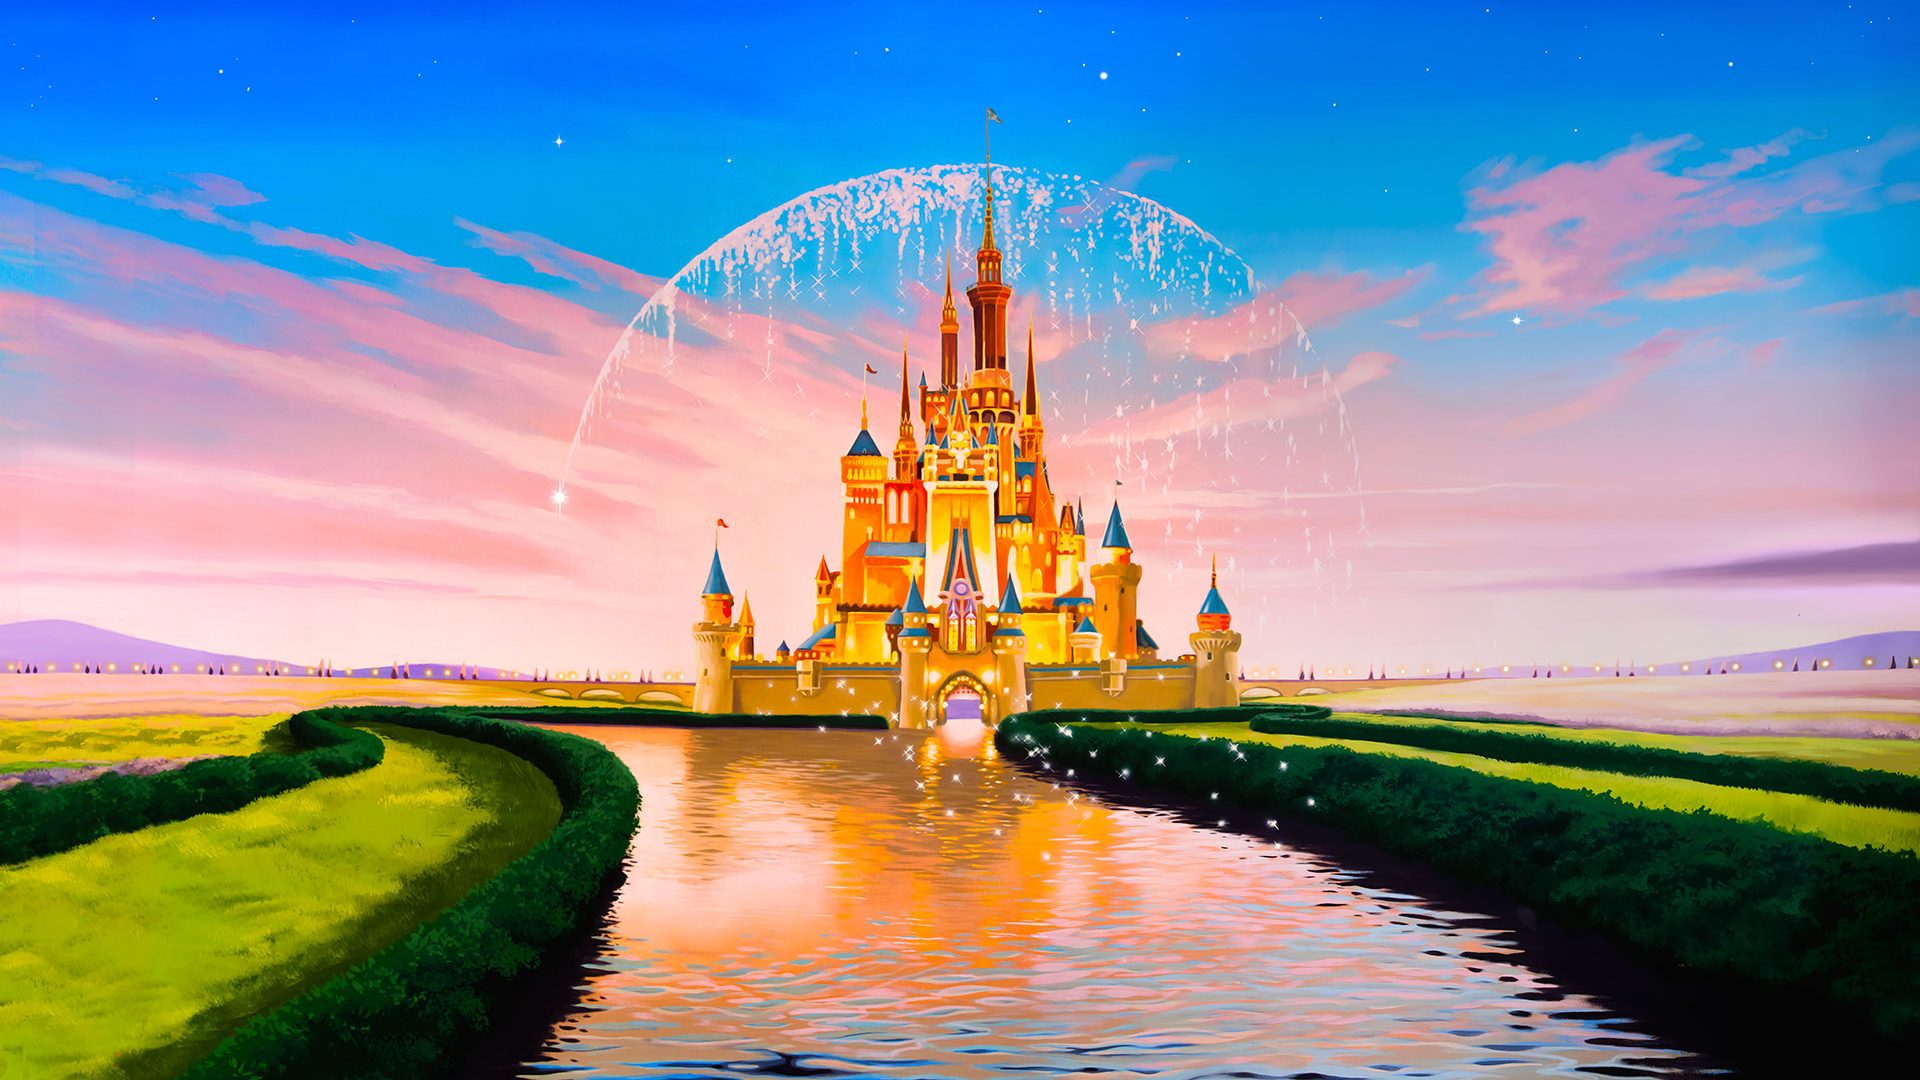 Background Disney Castle Cartoon - HD Wallpaper 